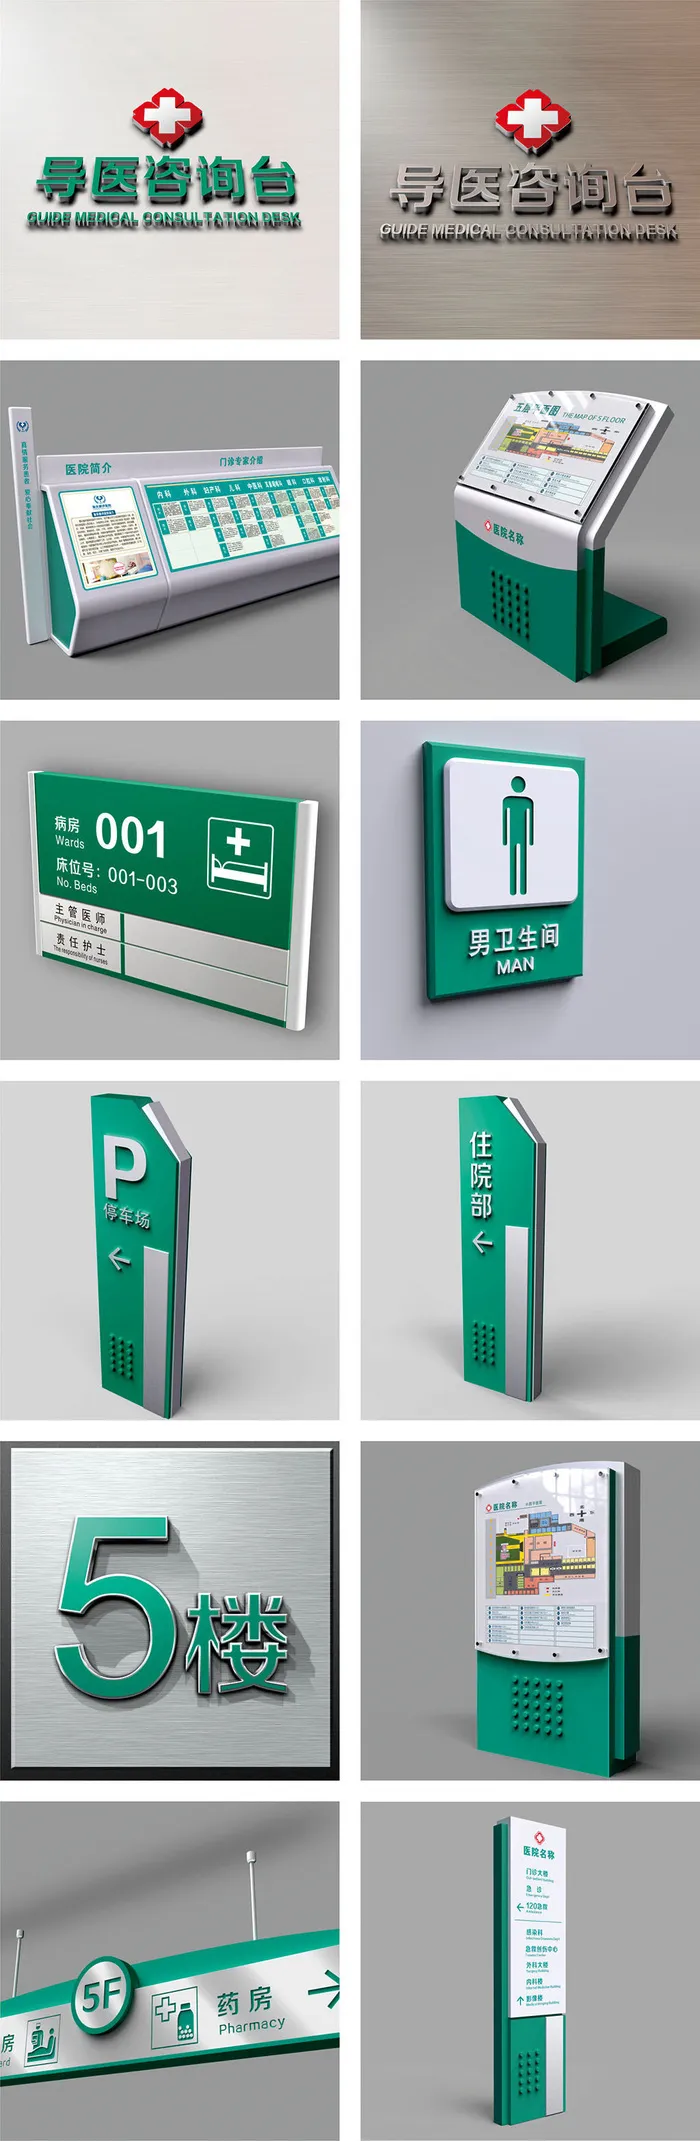 大气绿色全套医院标识导视系统导视牌设计